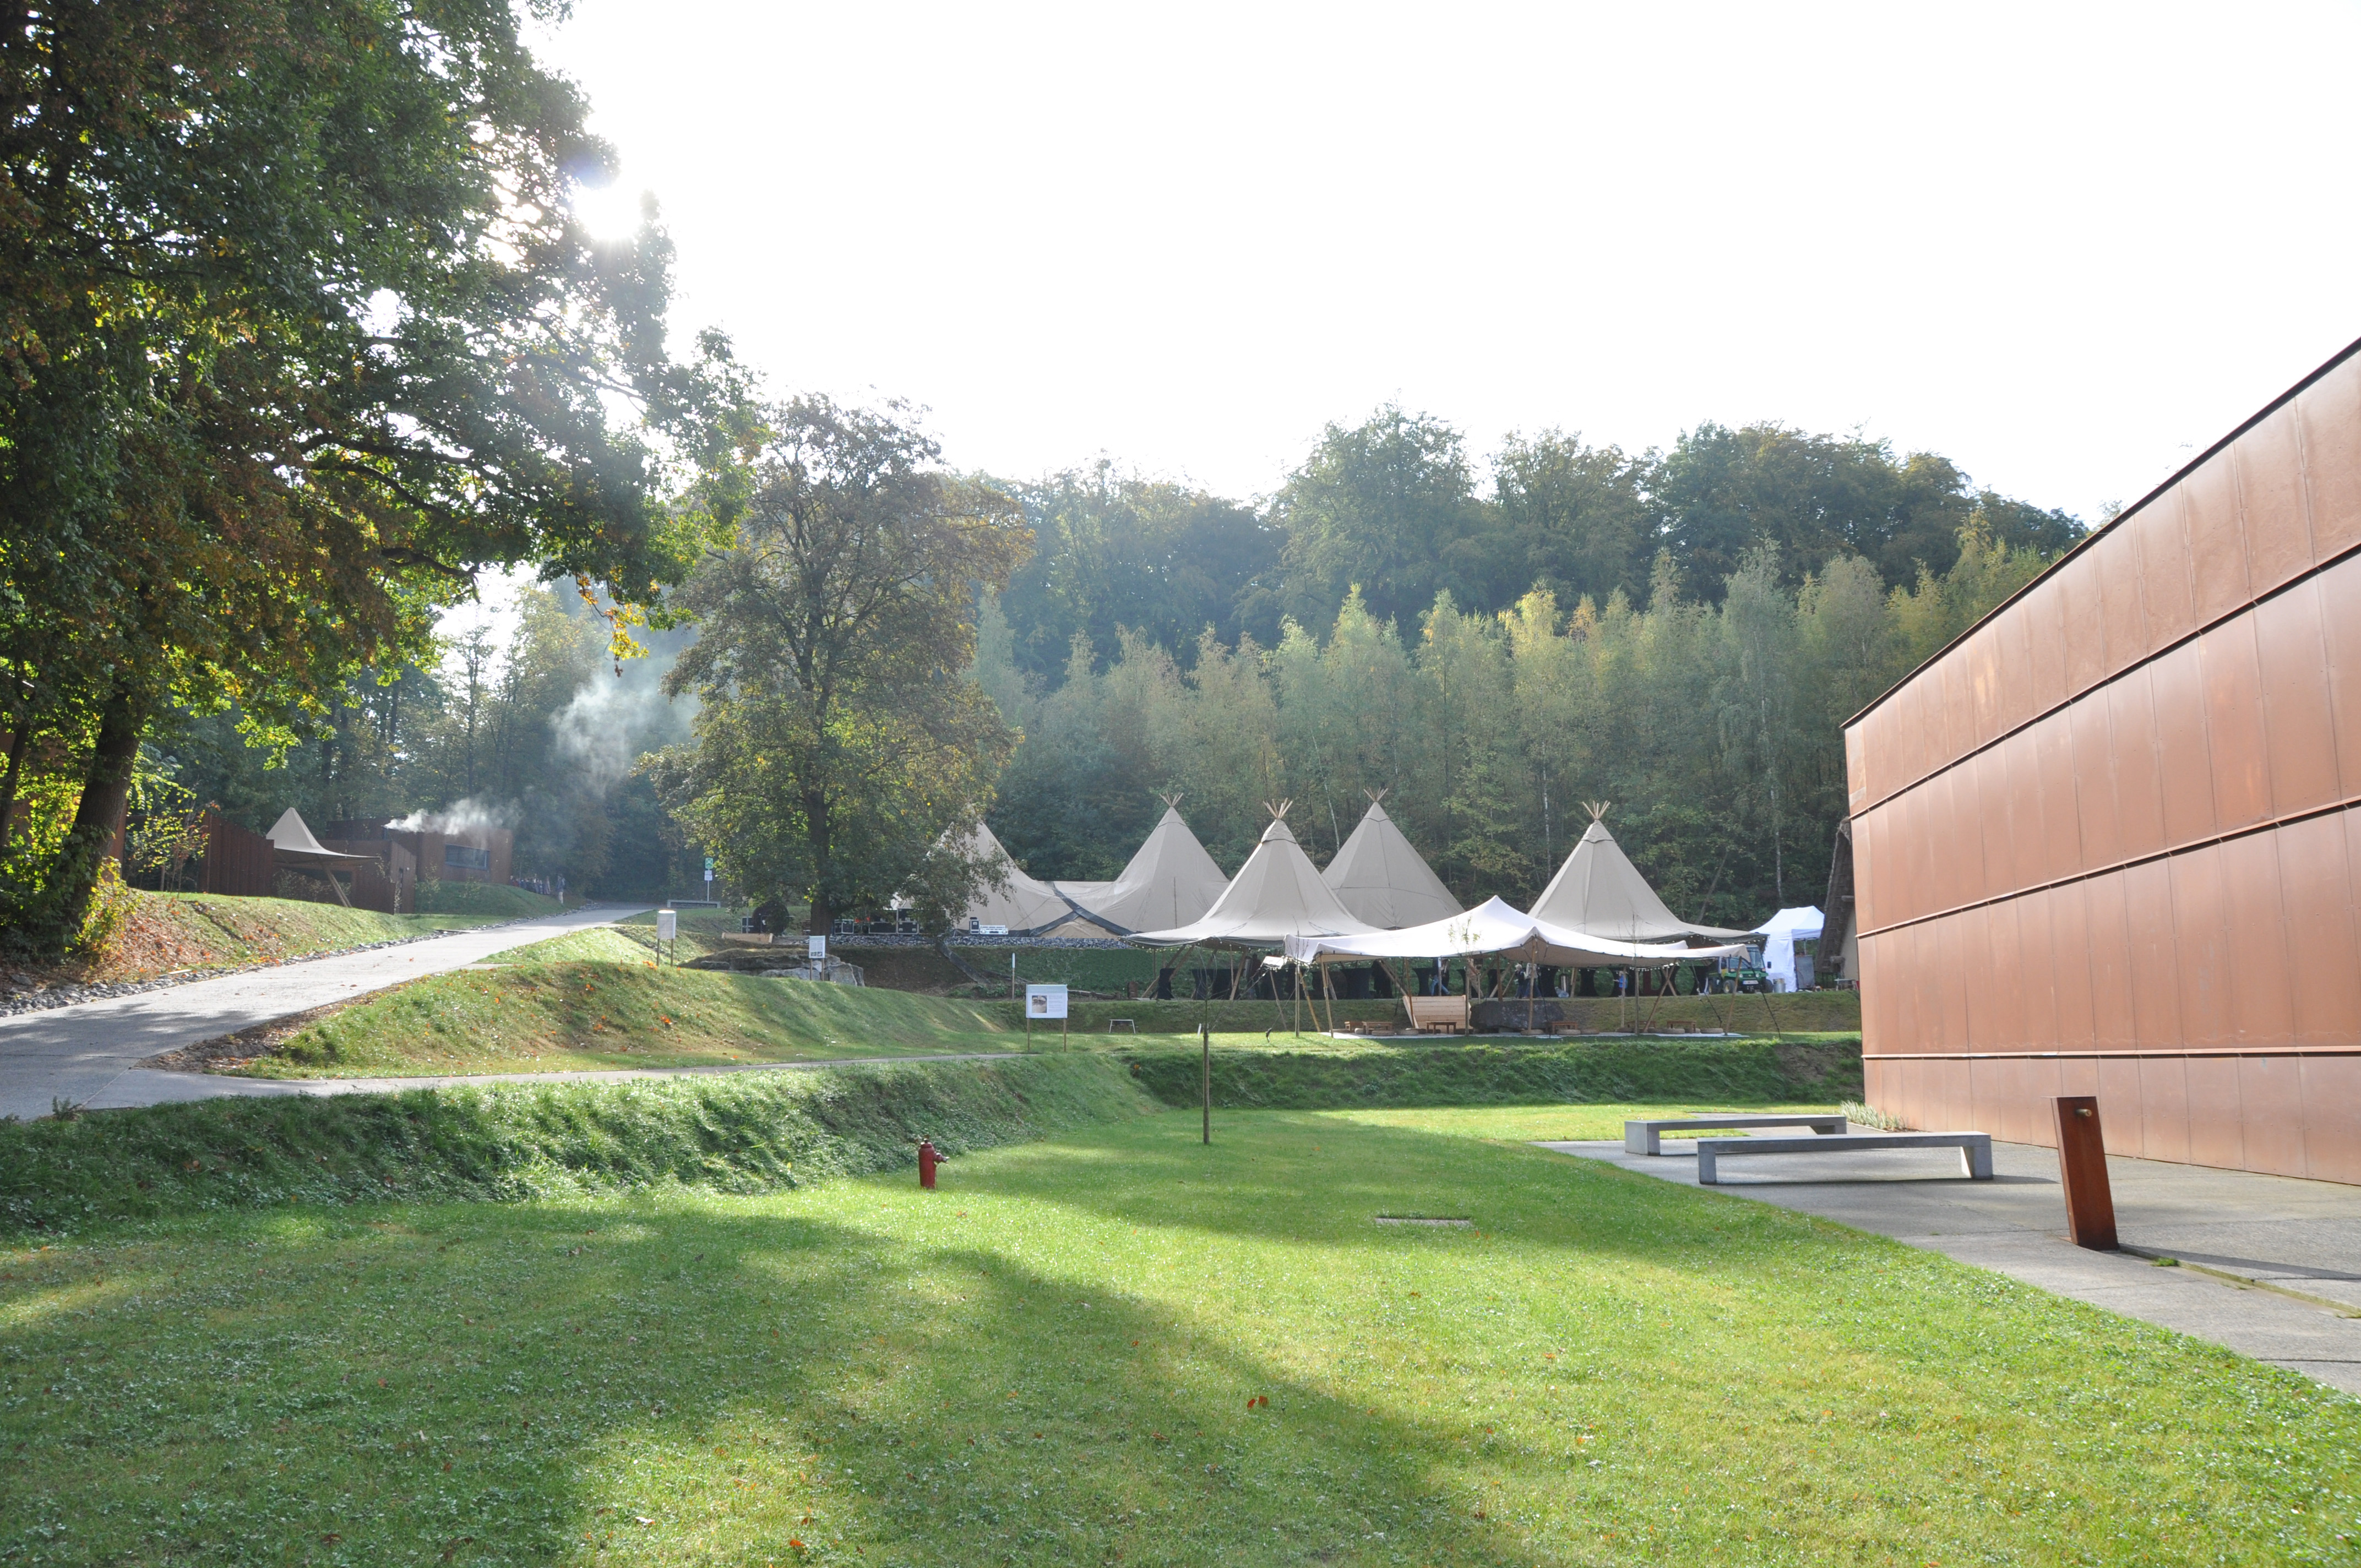 Découvrez le Préhistomuseum, le site préhistorique de Ramioul à Flémalle